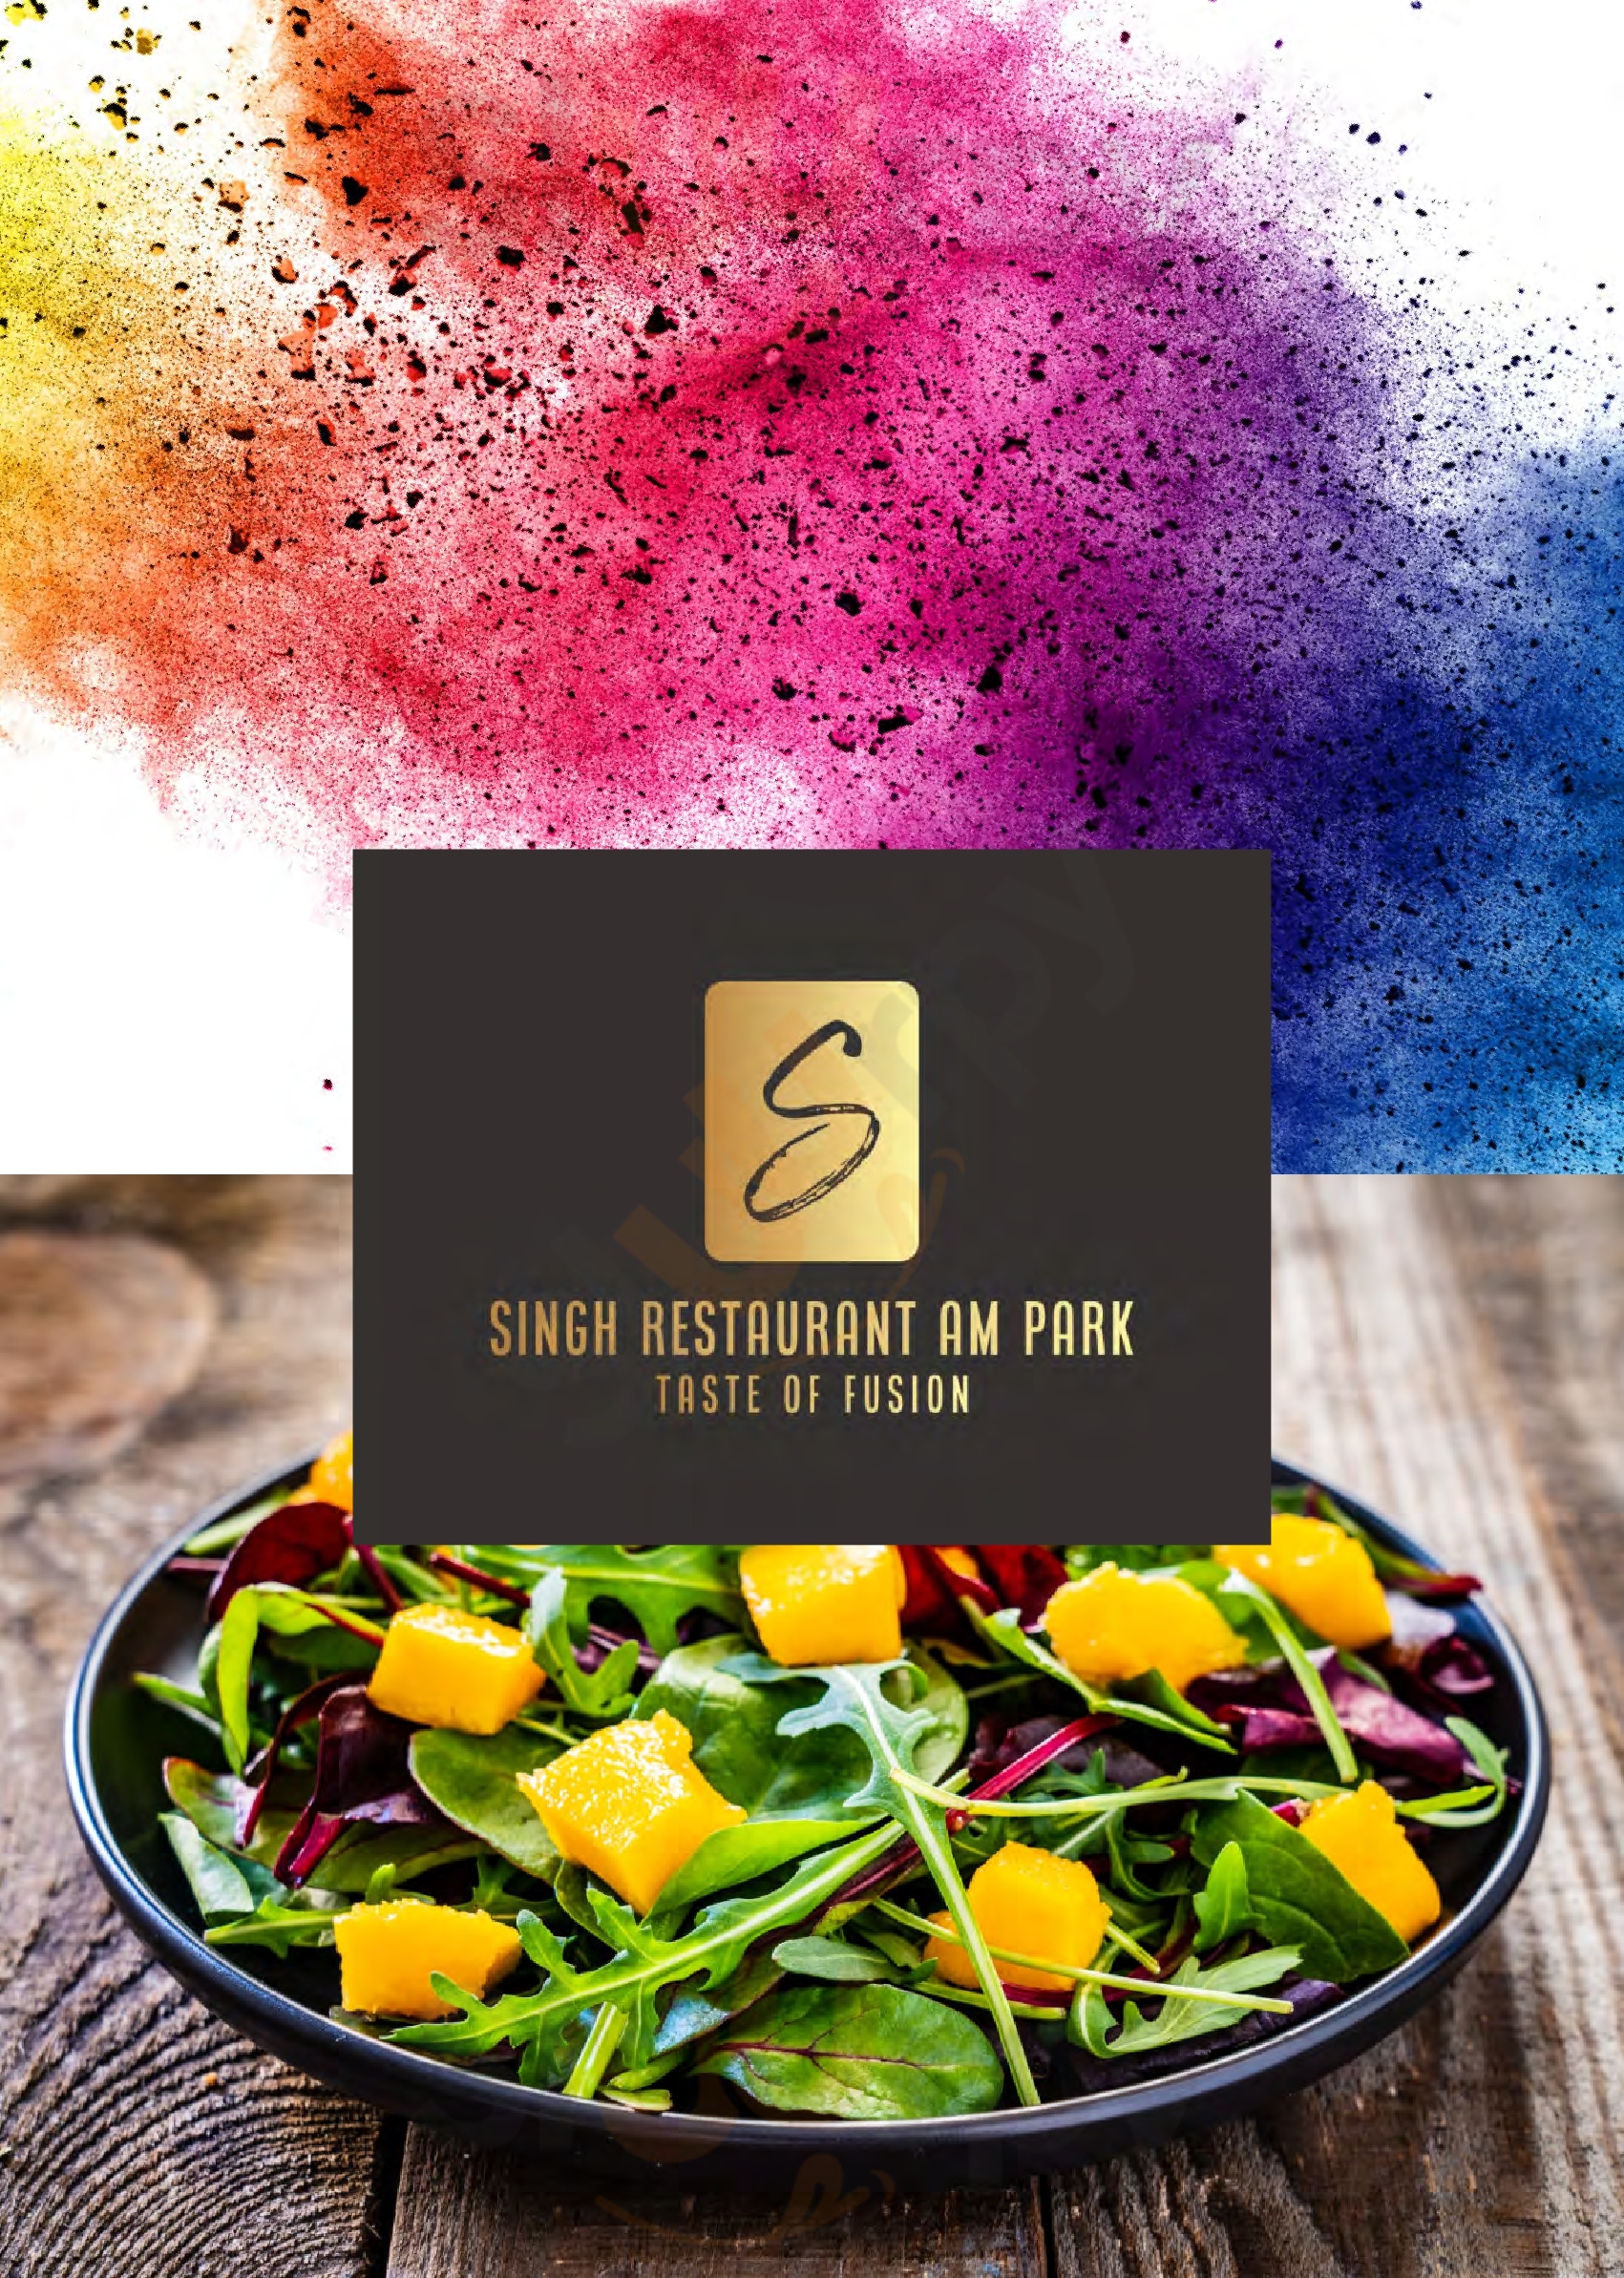 Singh Restaurant Am Park Bad Homburg Menu - 1